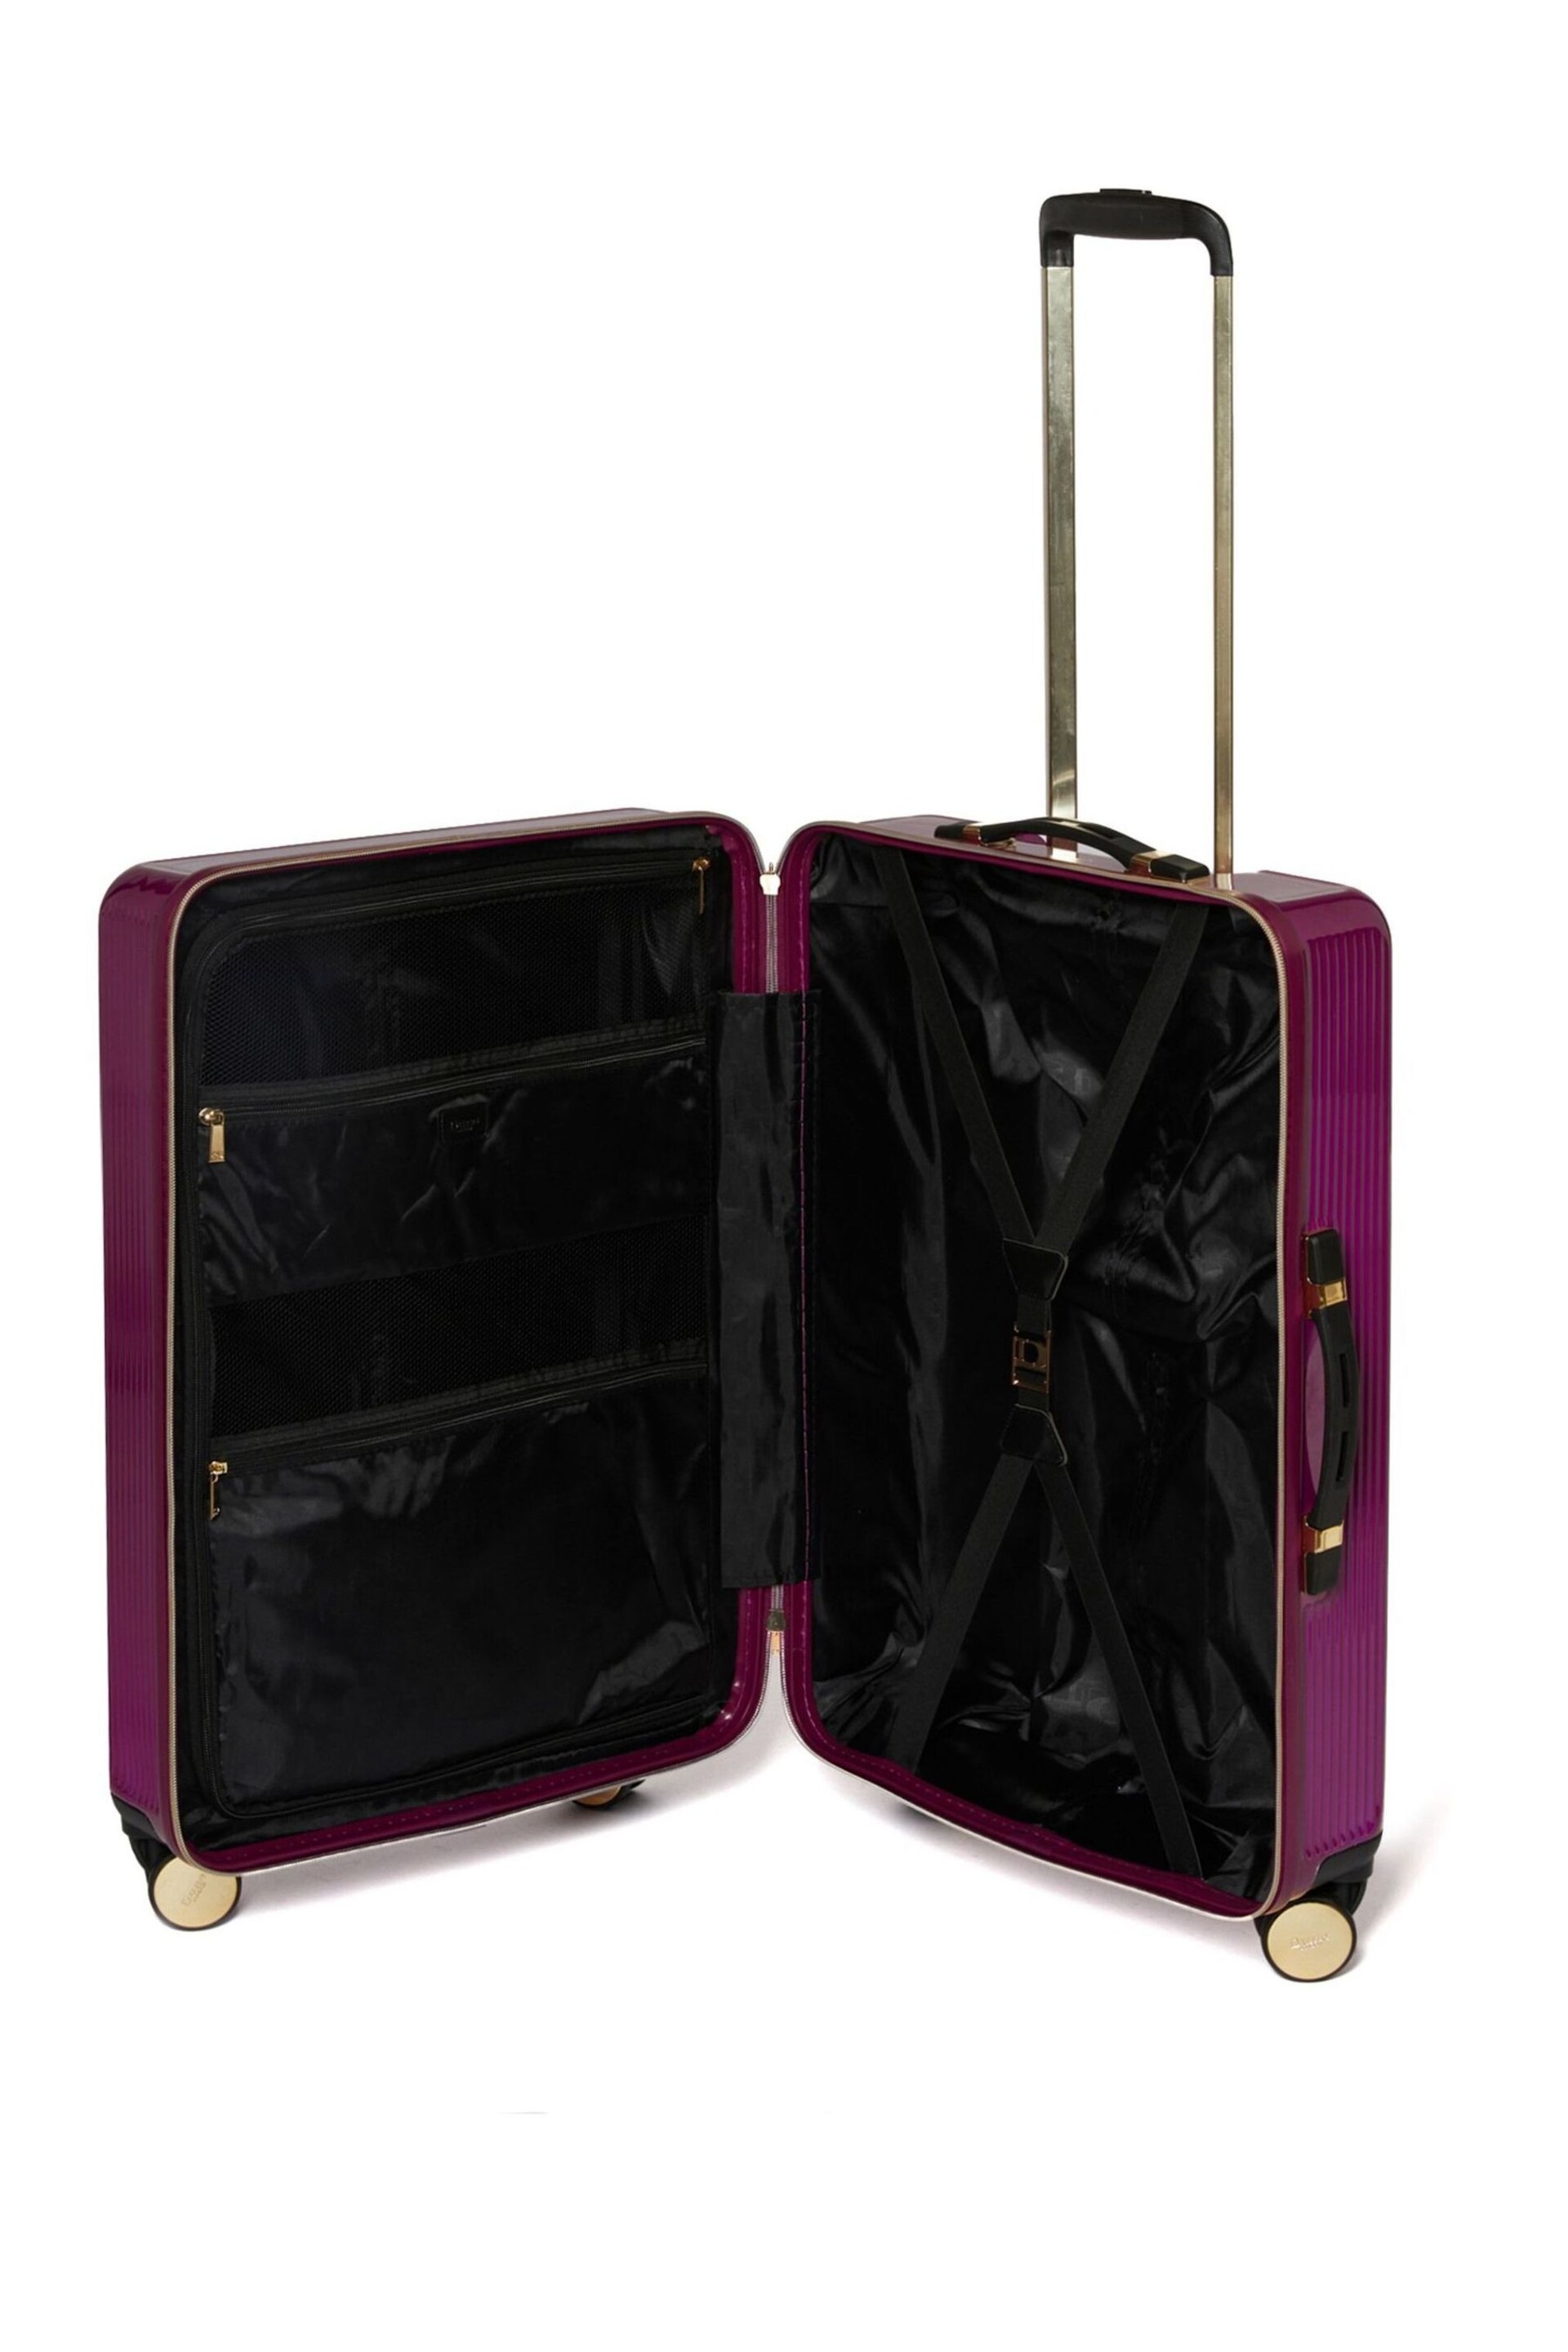 Dune London Pink Olive 67cm Medium Suitcase - Image 3 of 3